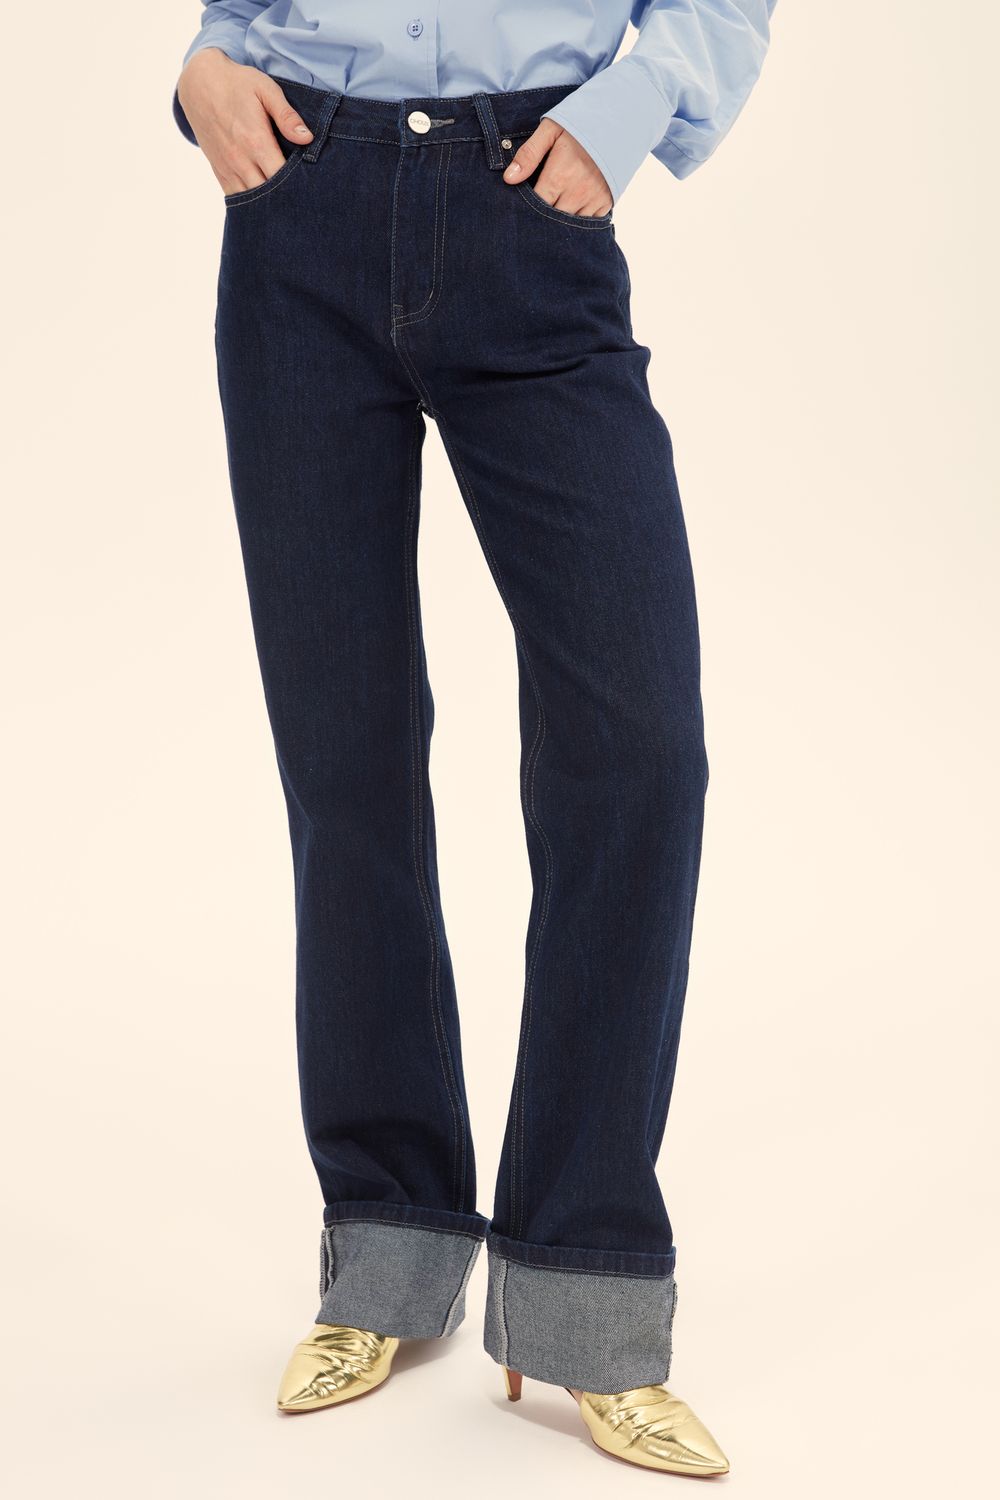 Как выбрать ремень к голубым джинсам: 10 стильных идей